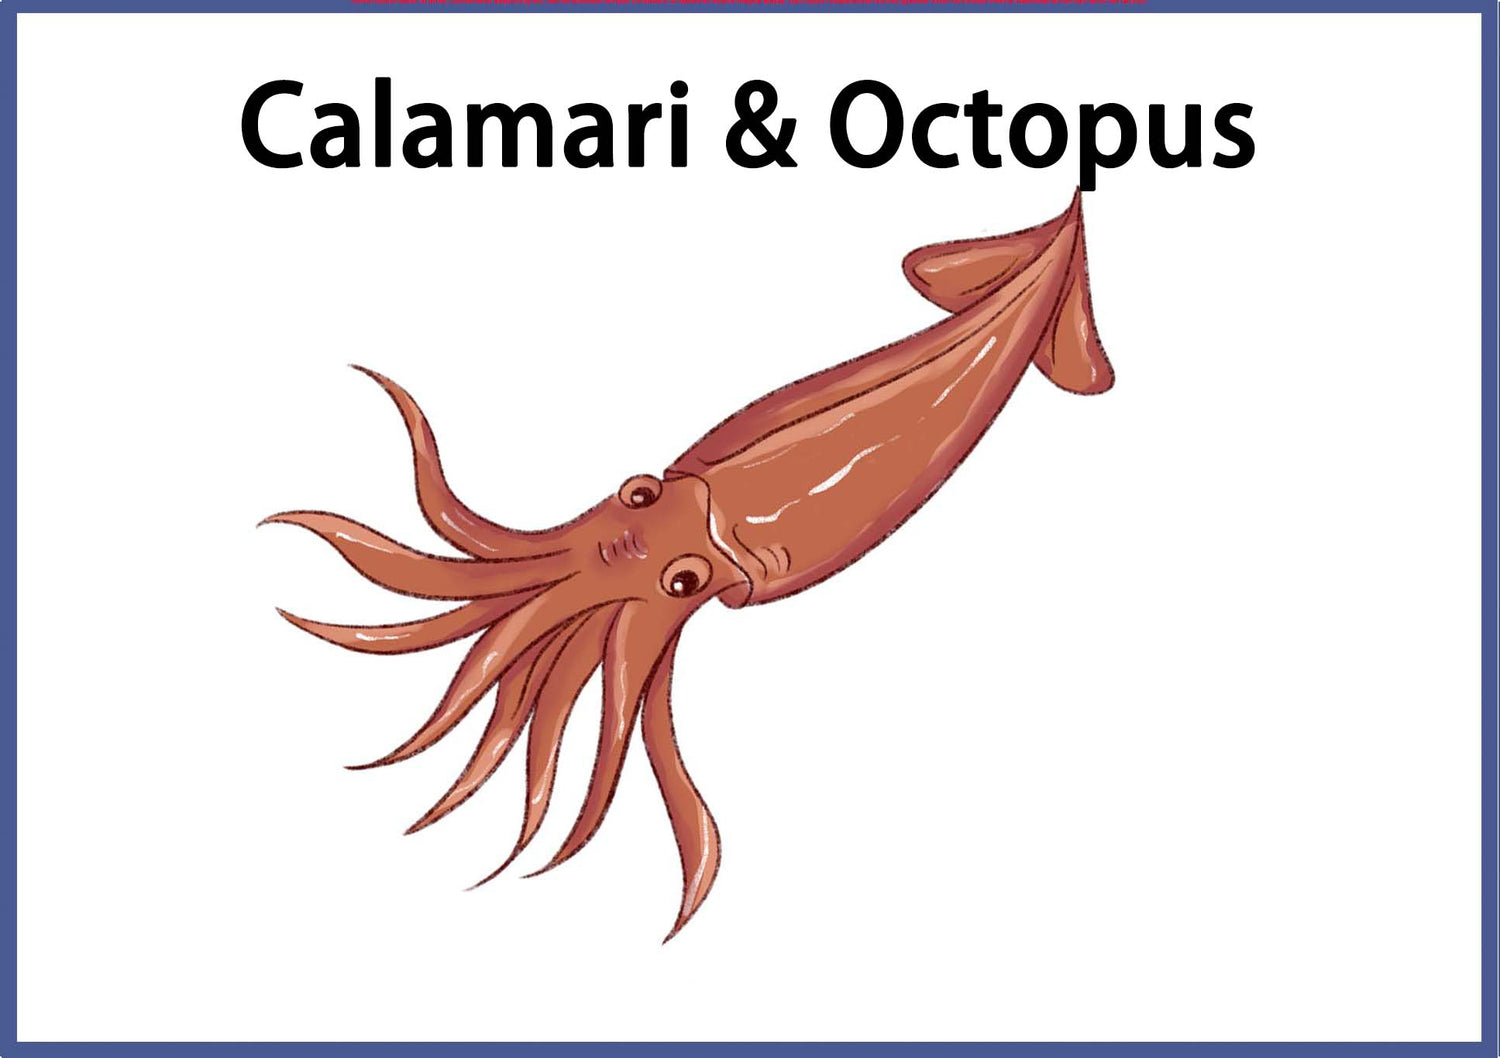 Calamari and Octopus